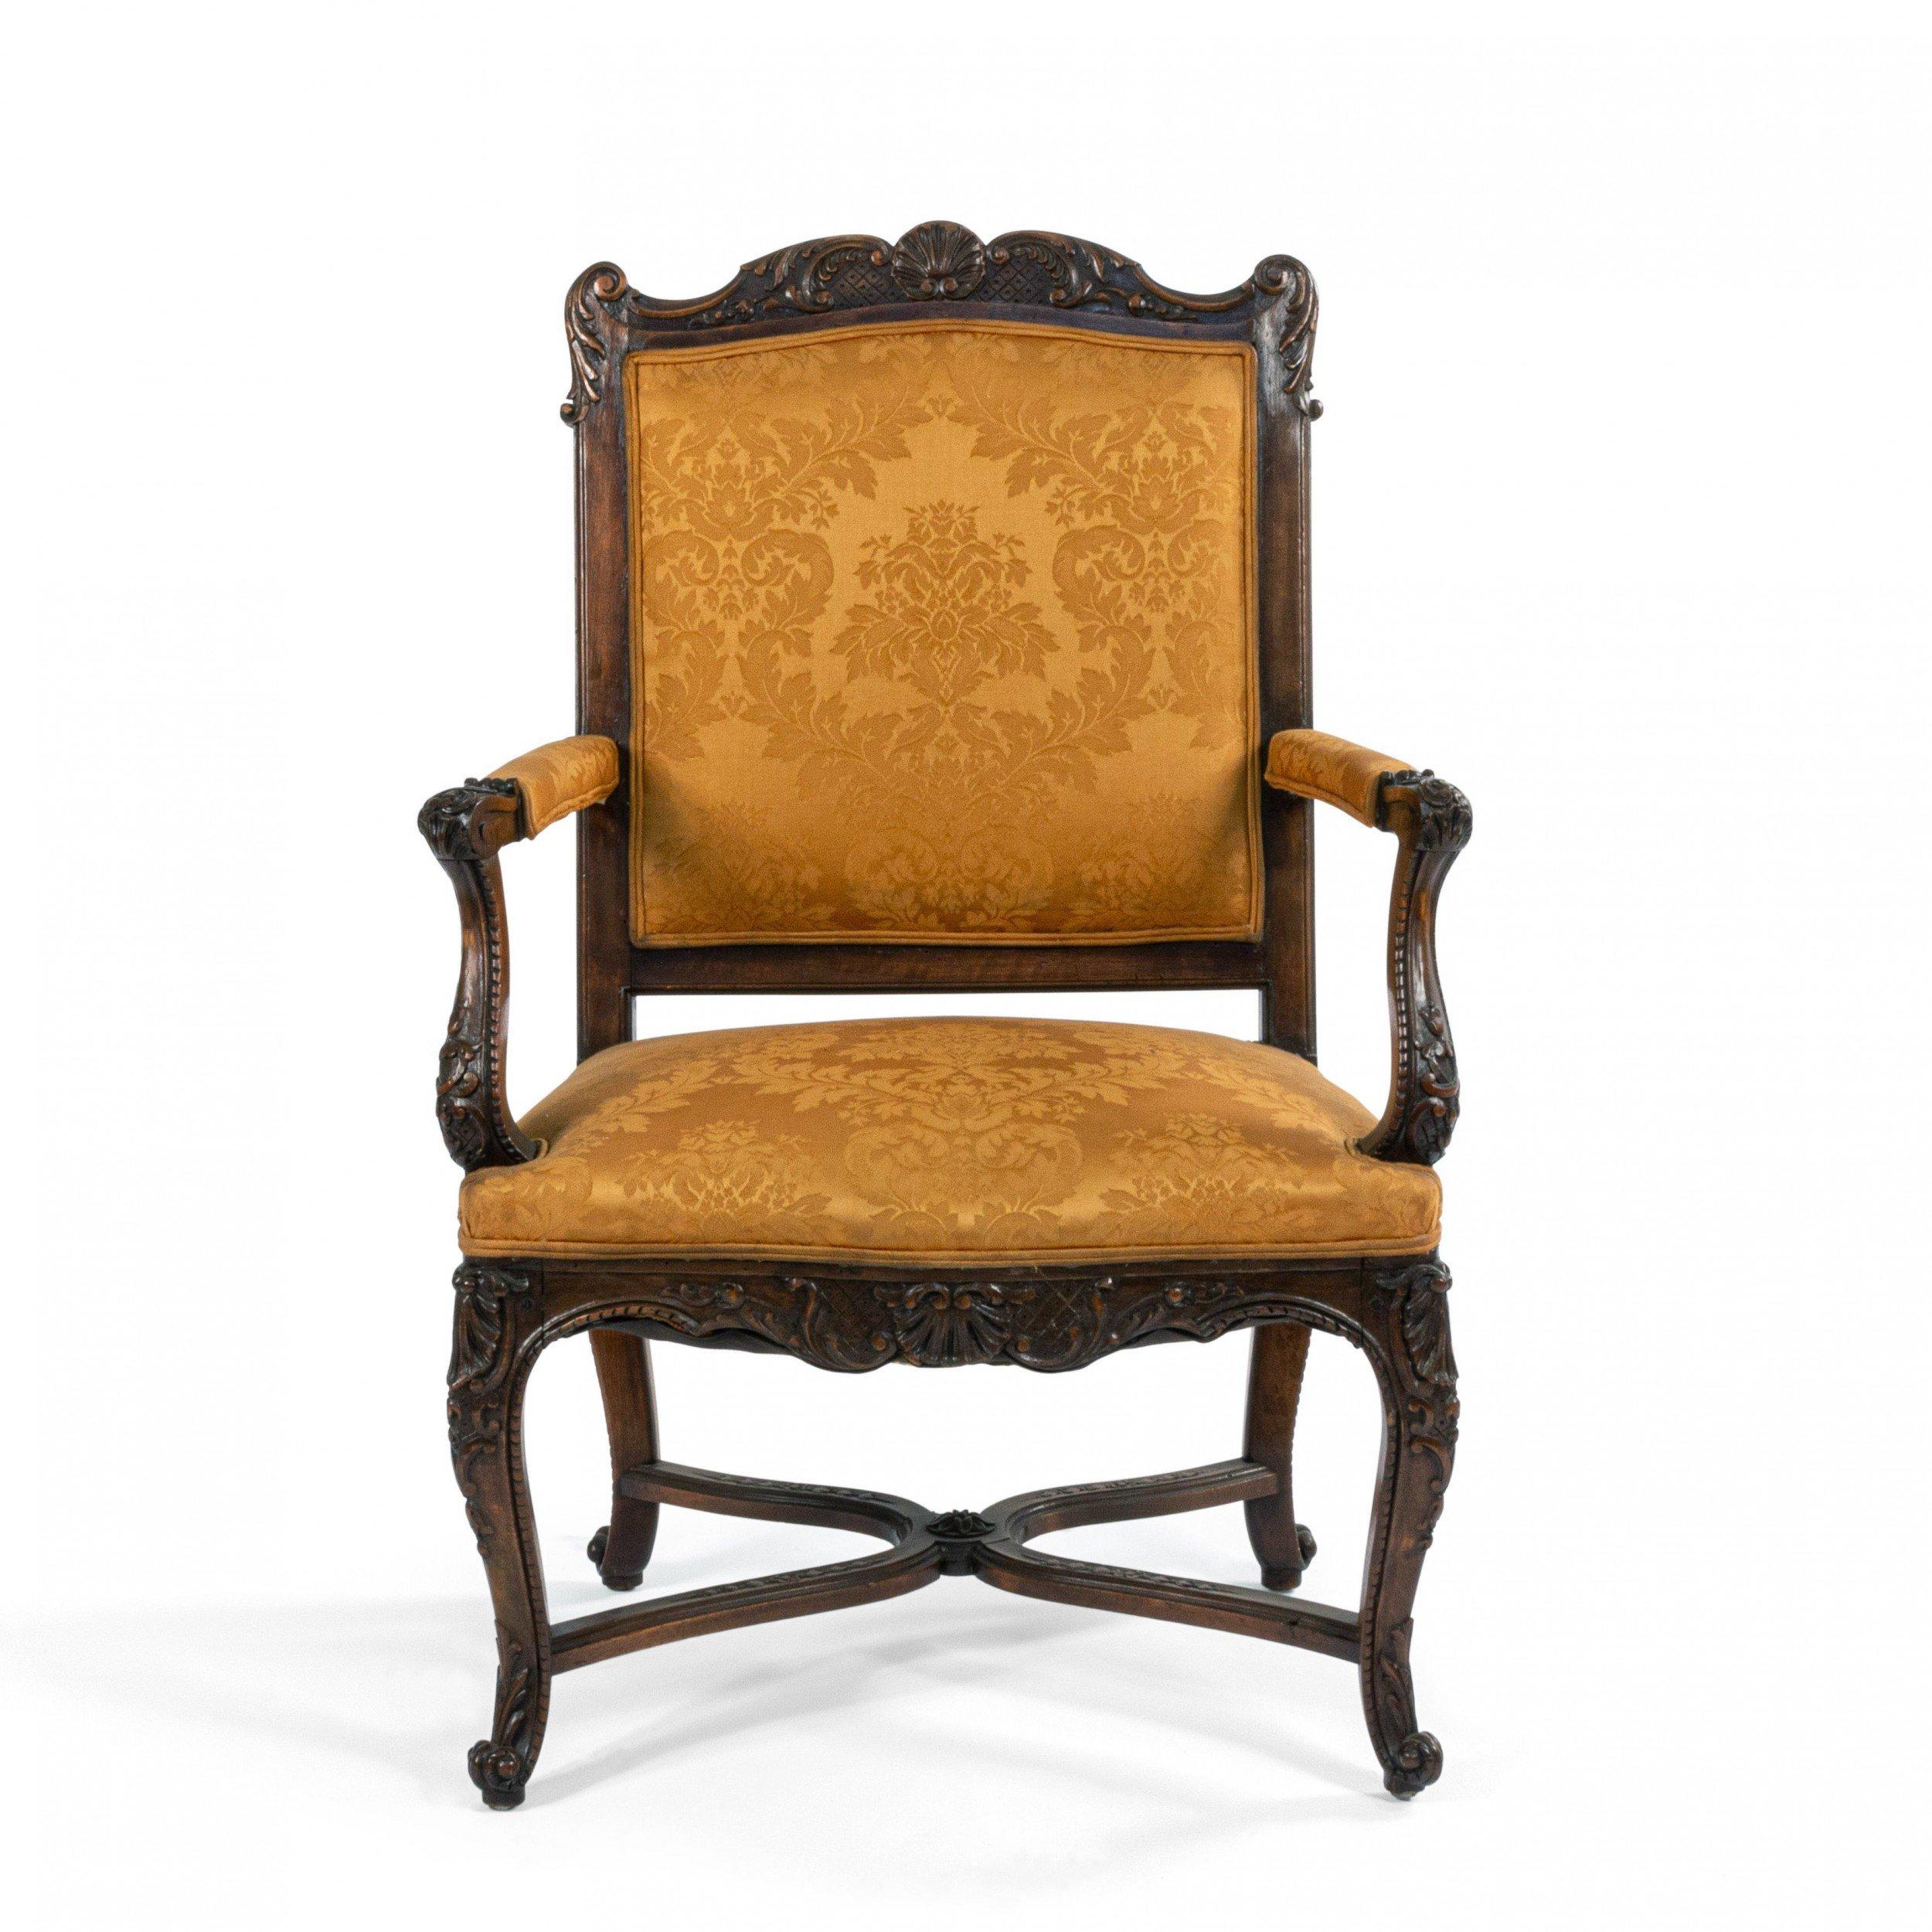 Paar französische Sessel aus Nussbaum im Regence-Stil (19. Jahrhundert) mit Goldpolsterung.